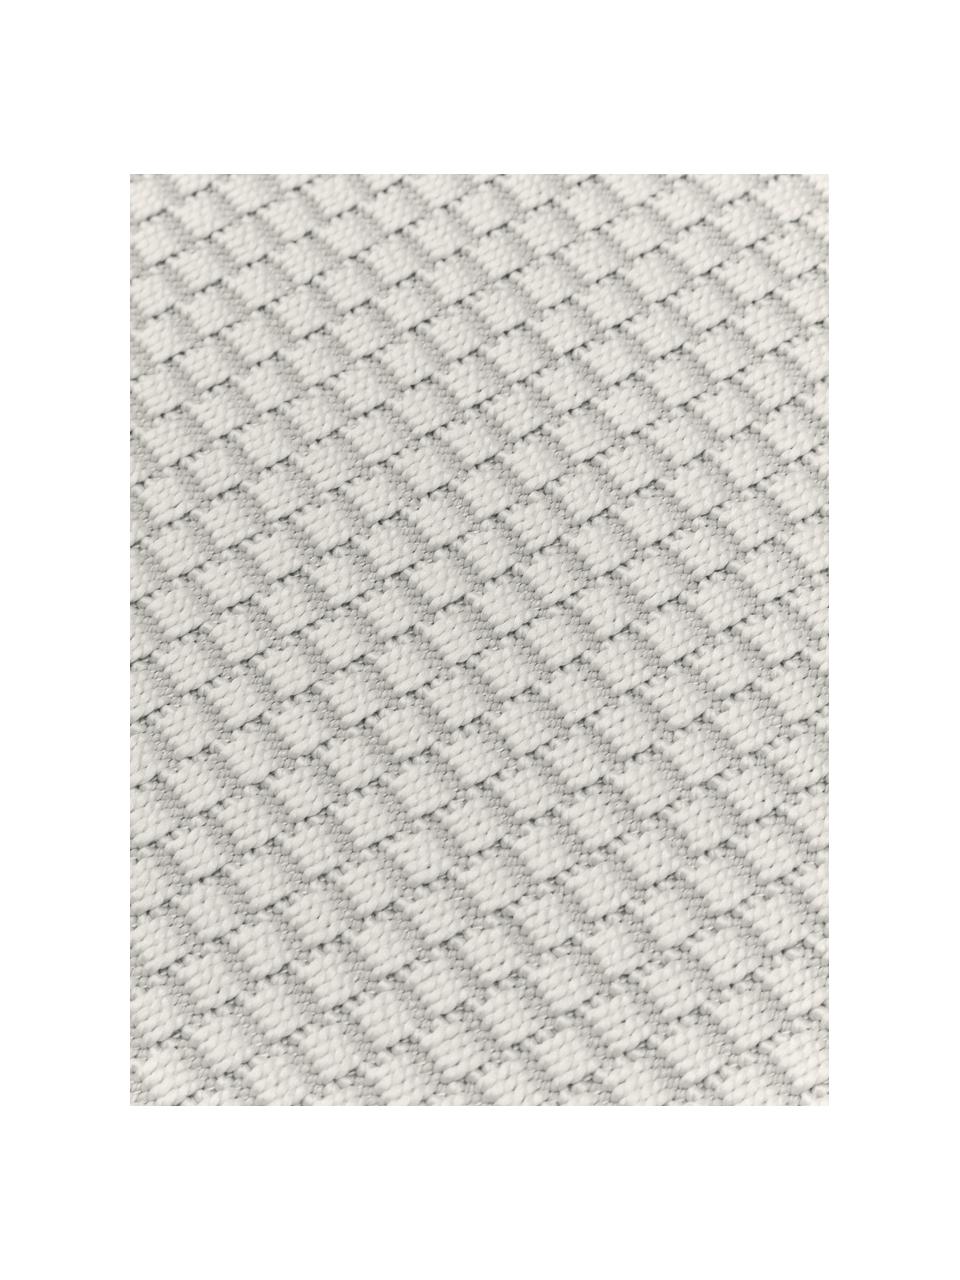 Tappeto ovale da interno-esterno color bianco crema Toronto, 100% polipropilene, Bianco crema, Ø 120 cm (taglia S)